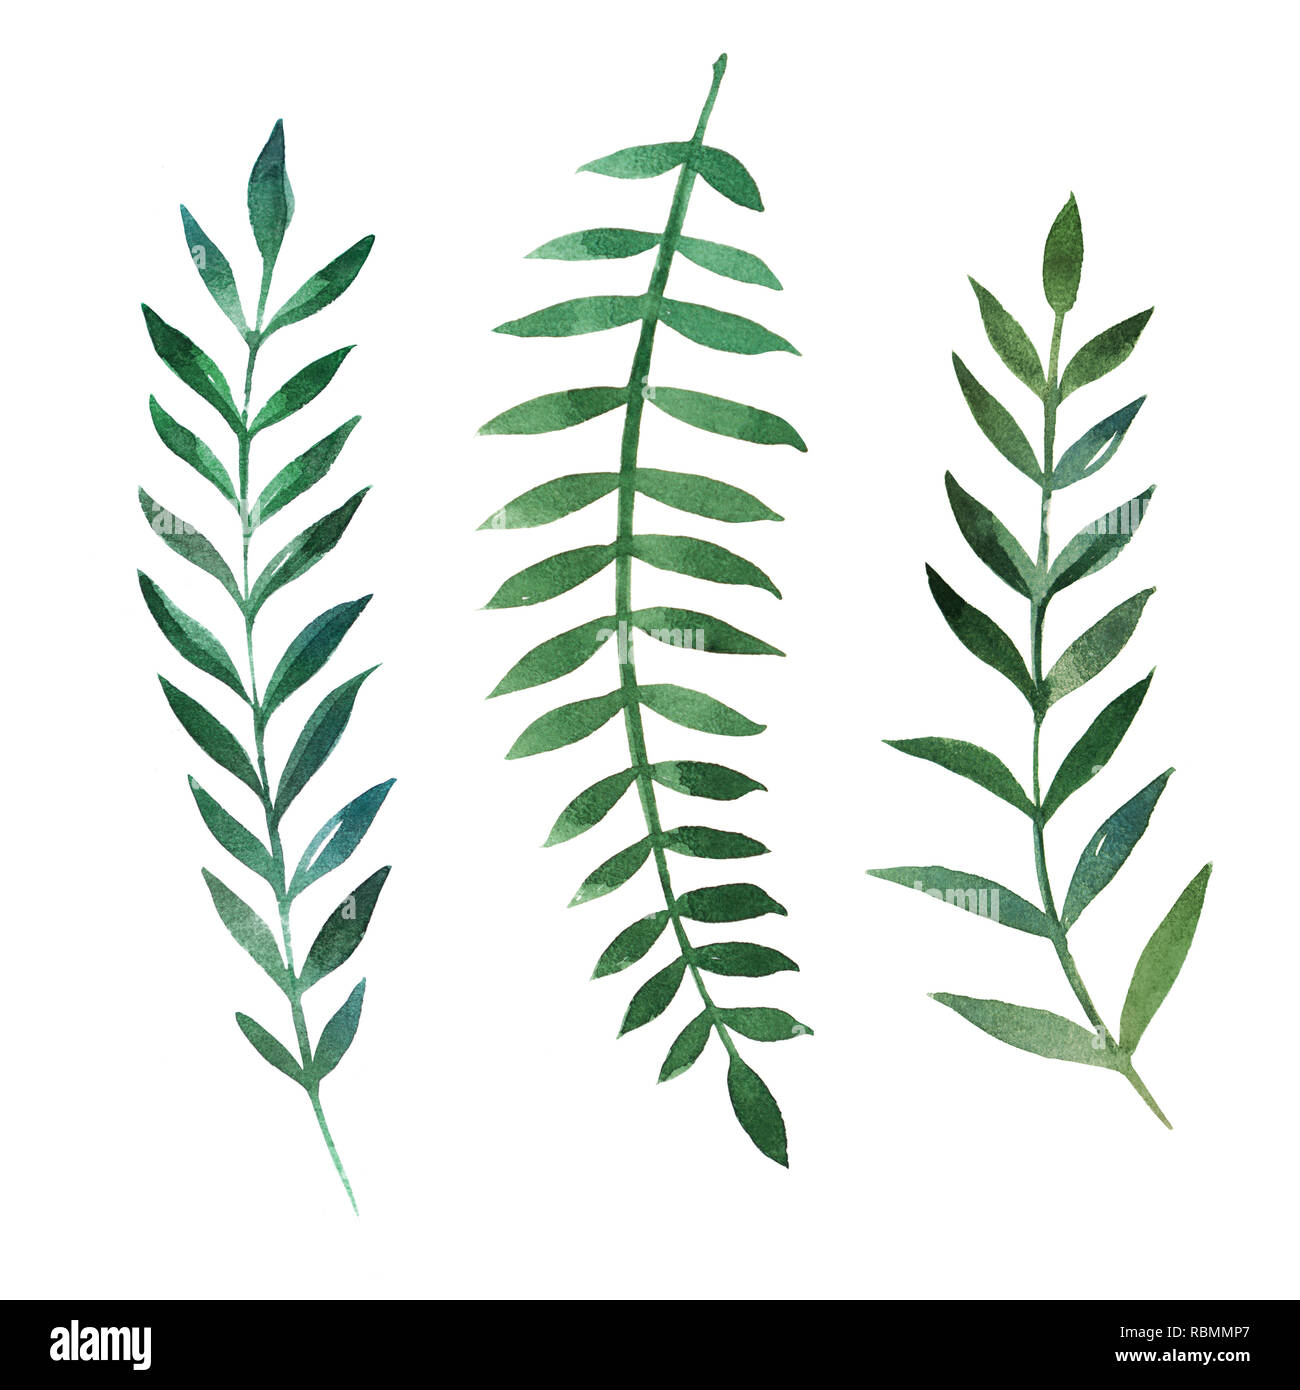 2d disegnati a mano ad acquerello elementi grafici. Colorate illustrazioni naturale di verde laurus rami e foglie. Foto Stock